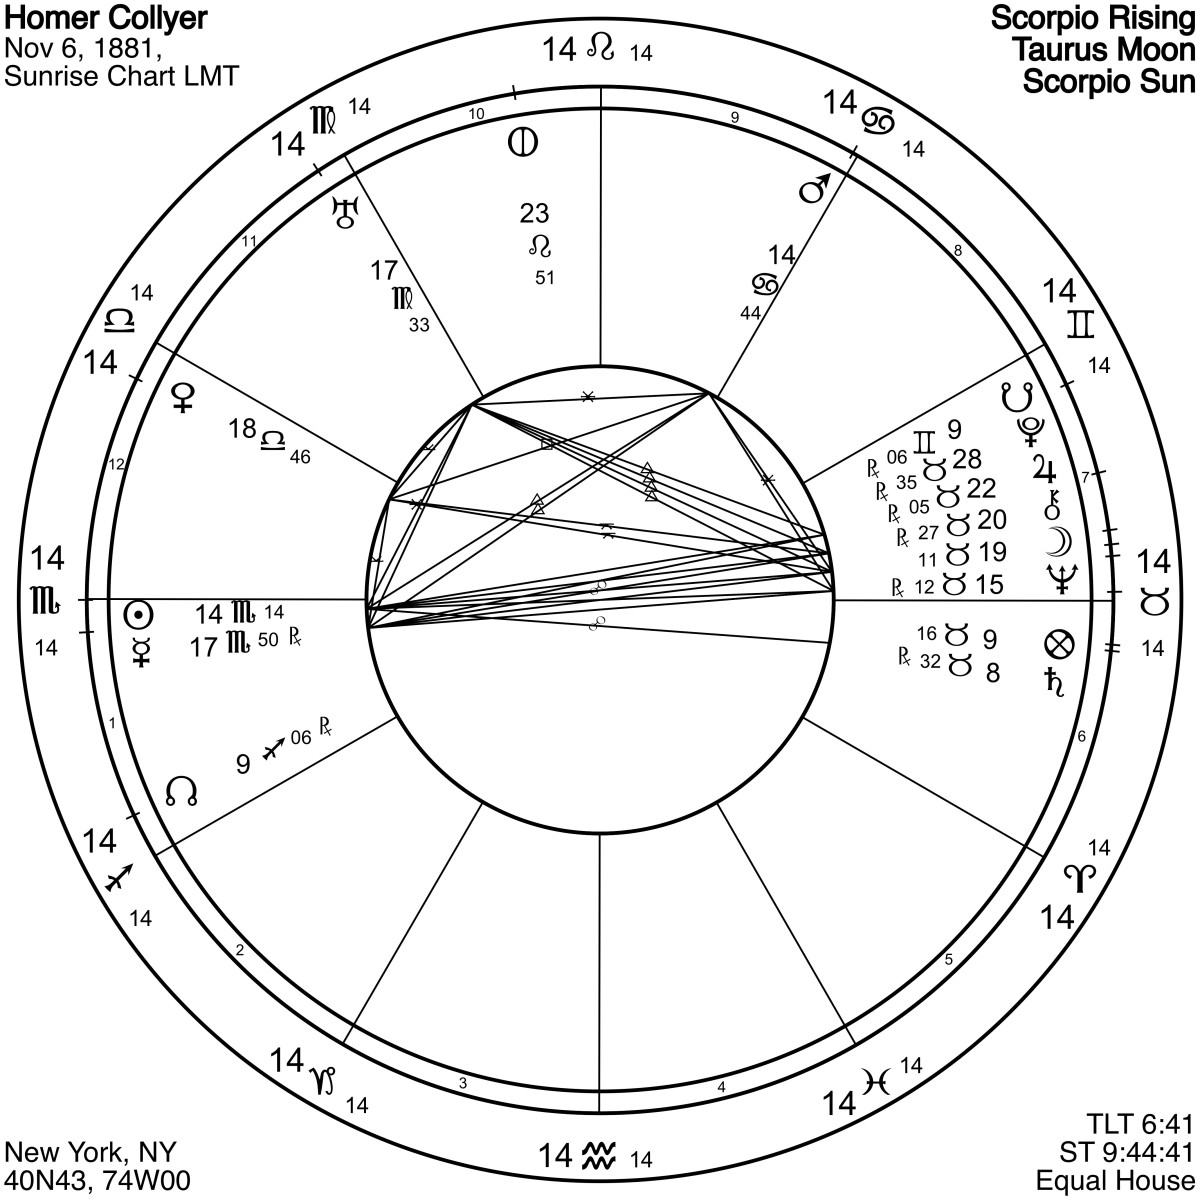 荷马·科洛耶的占星术图充满了金牛座的行星(在3点钟的位置)和天蝎座的太阳(在9点钟的位置)。冲突和挫折以孤立和依赖告终。日出是默认时间。